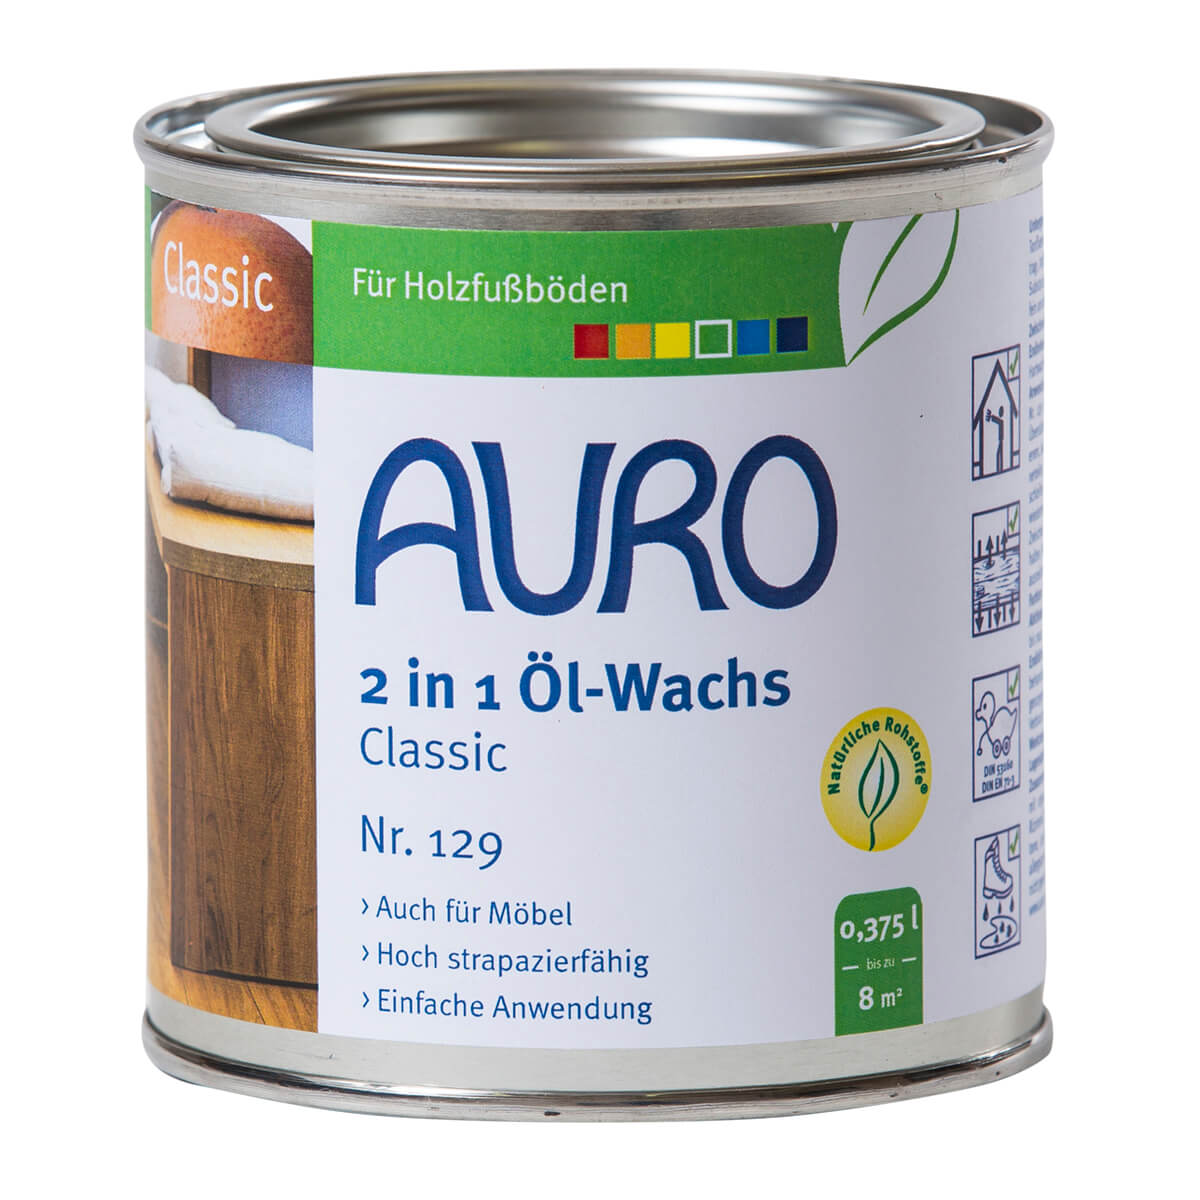 AURO 2 in 1 Öl-Wachs Classic Fußboden Öl Wachs Naturfarben